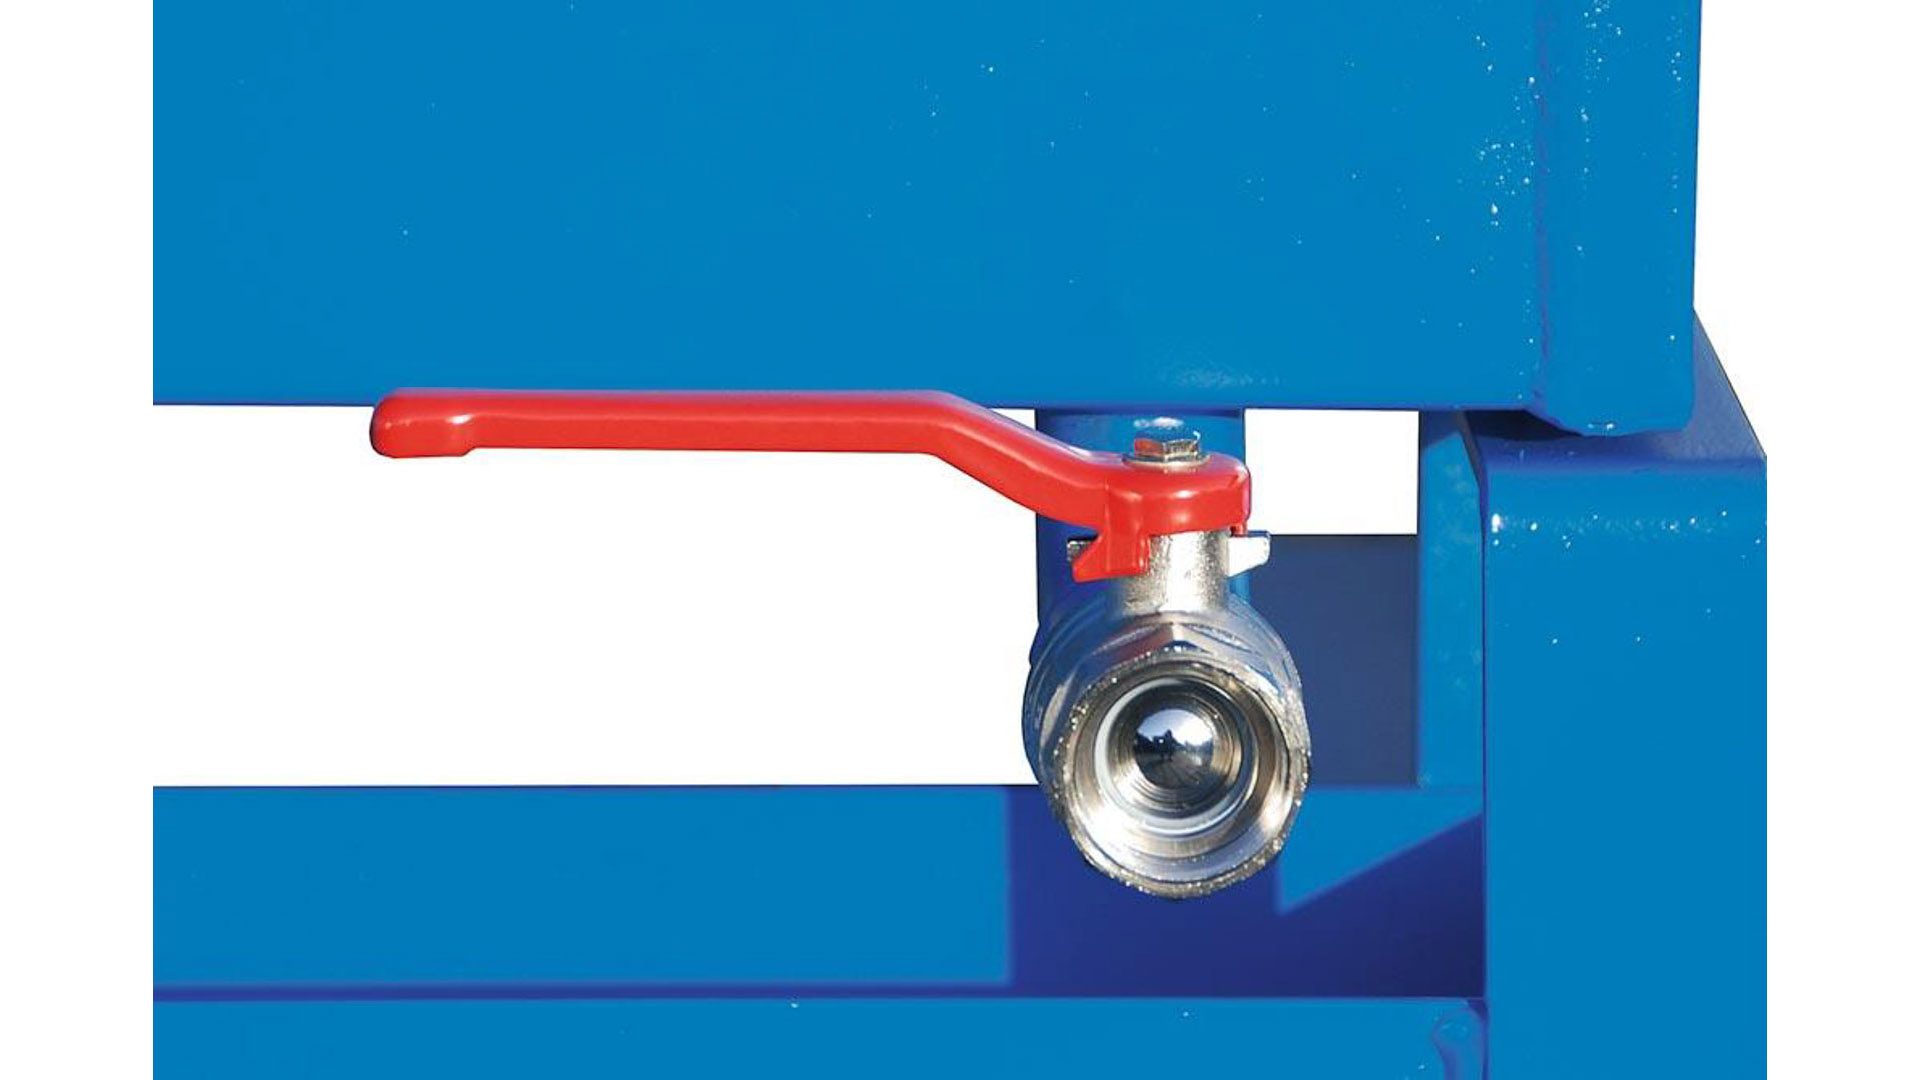 Späne-Selbstkippbehälter mit Abrollsystem, Volumen 0,60 cbm, LxBxH 1260x1070x835 mm, lackiert RAL 5012 blau